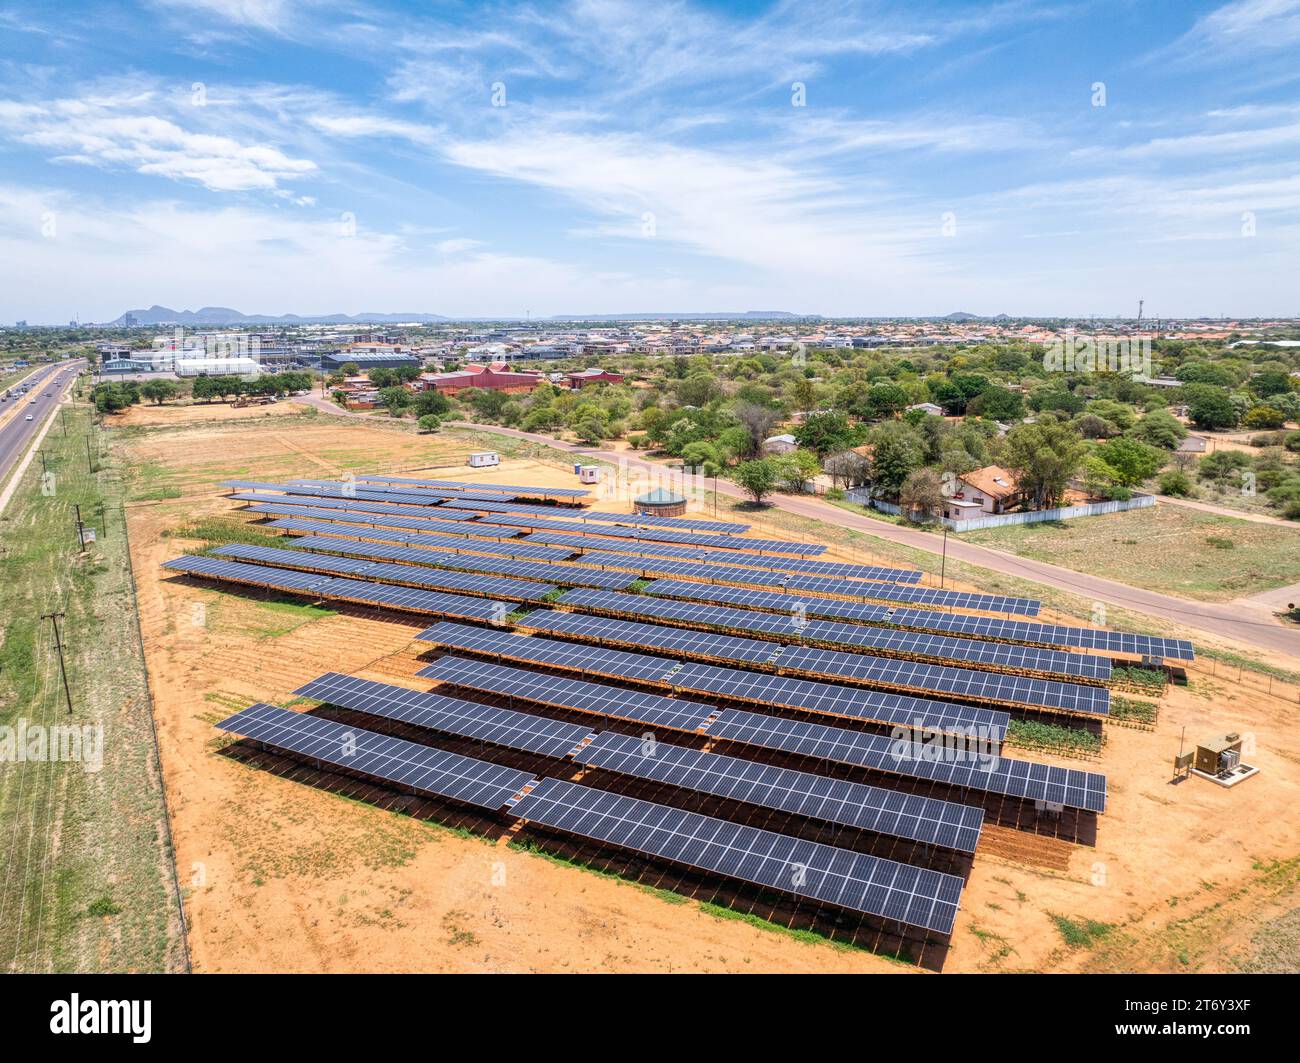 Vista aerea, della capitale del Botswana di Gaborone, pannelli solari sopra le colture che garantiscono verdure fresche per la città Foto Stock